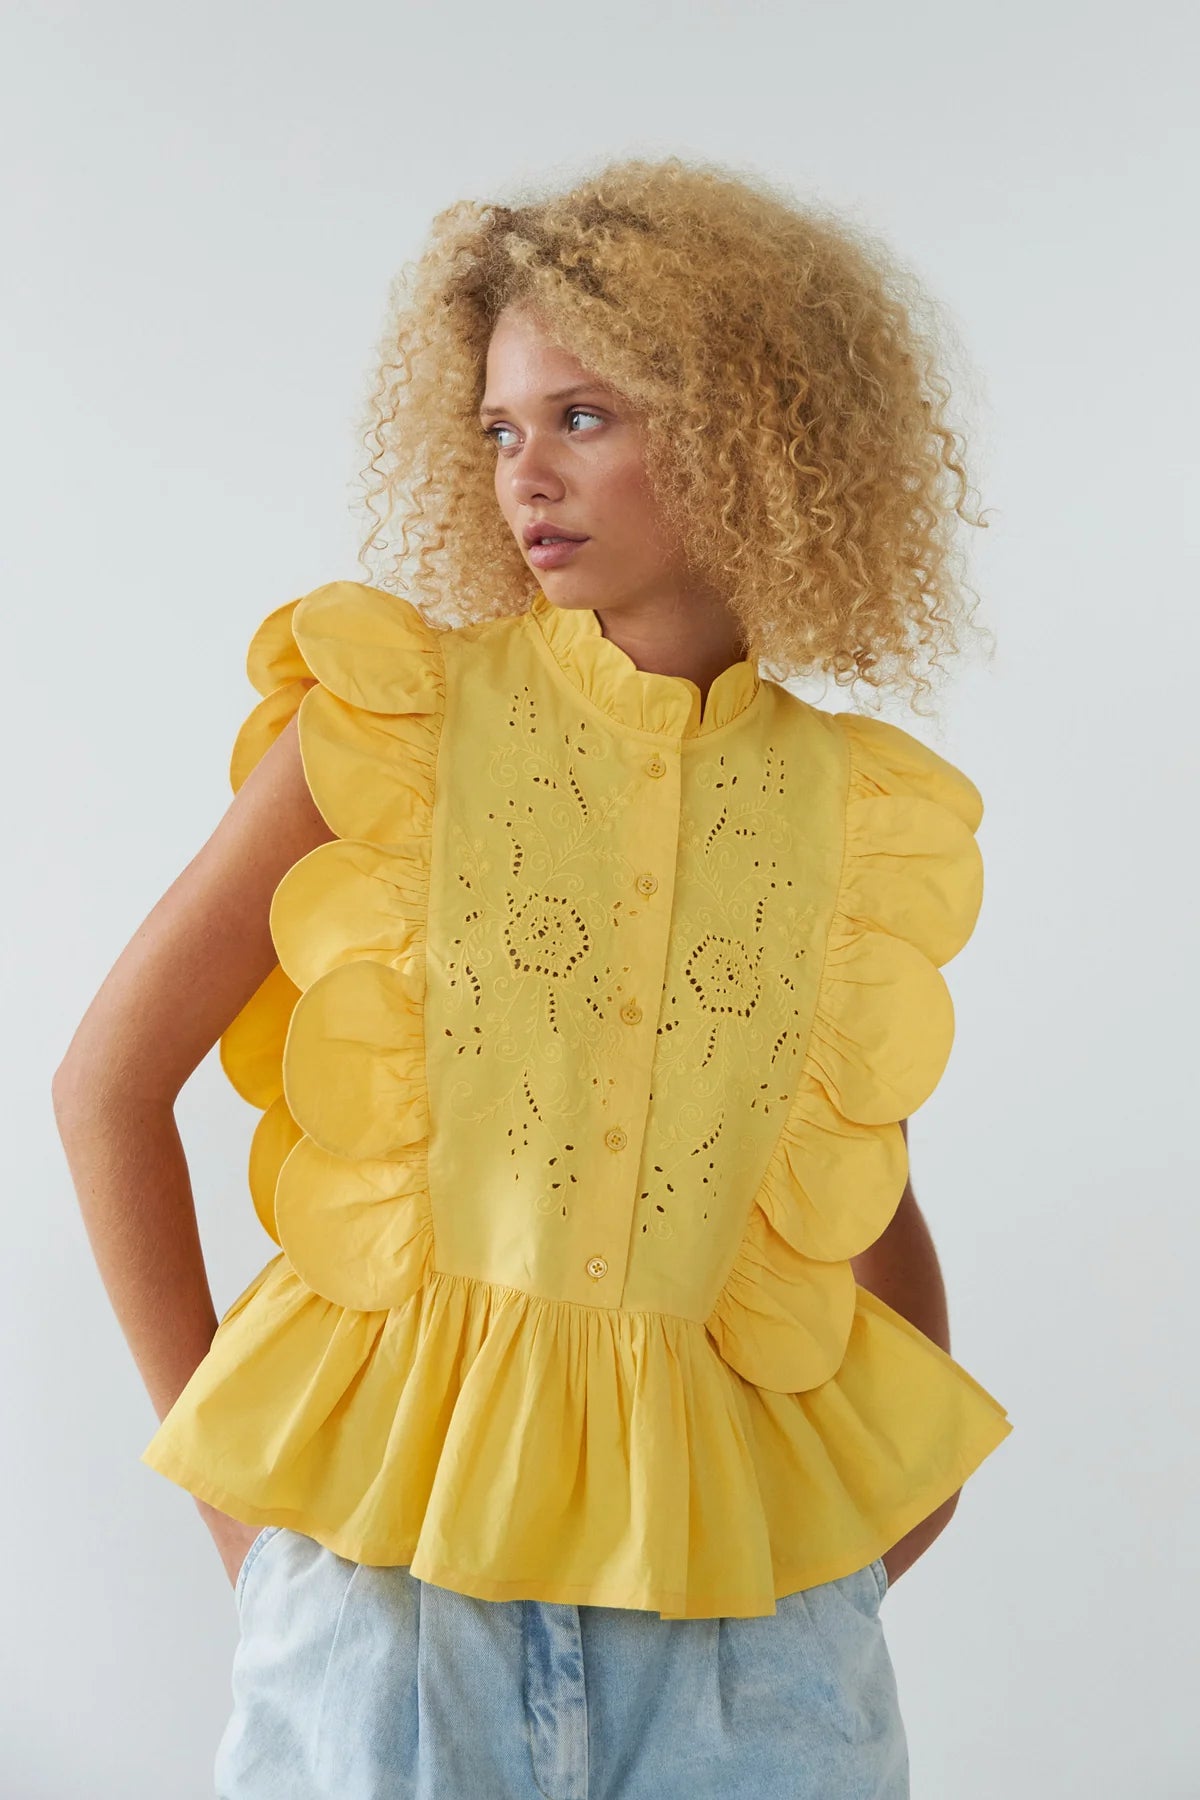 Stella Nova Embroidery Anglaise Top EA41-1638 Sweet Yellow